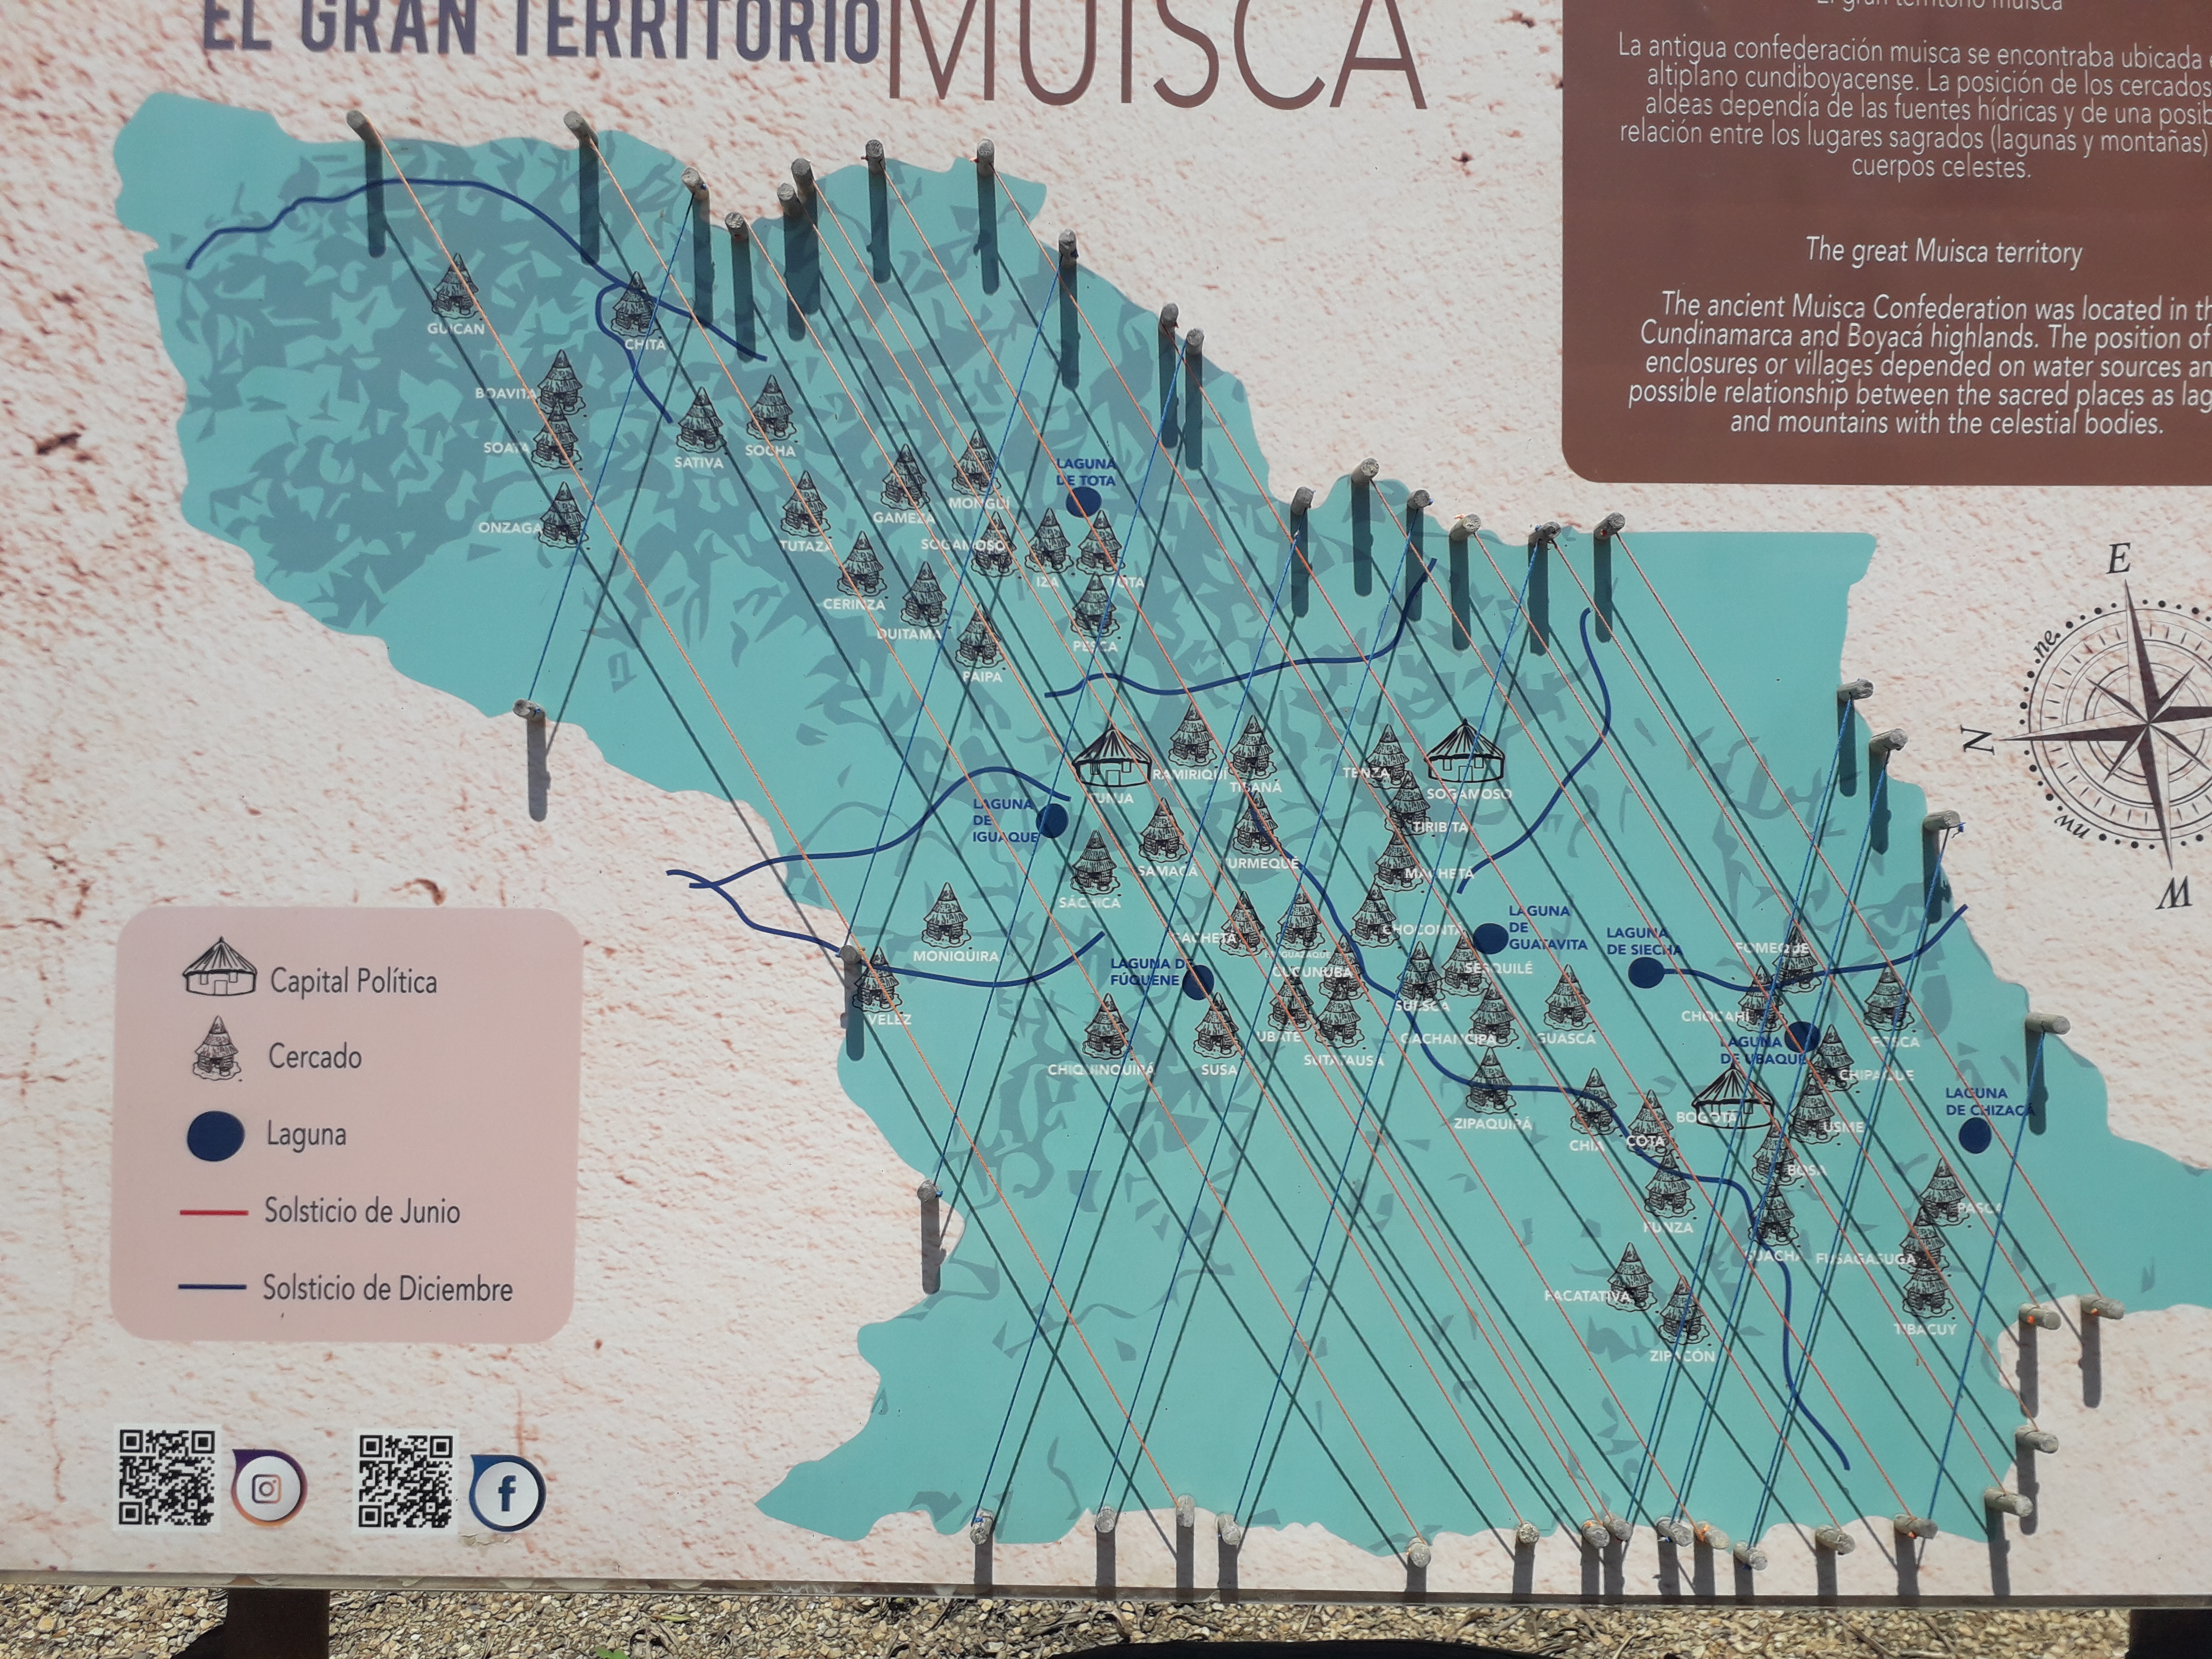 Карта территории муисков из музея в Согамосо